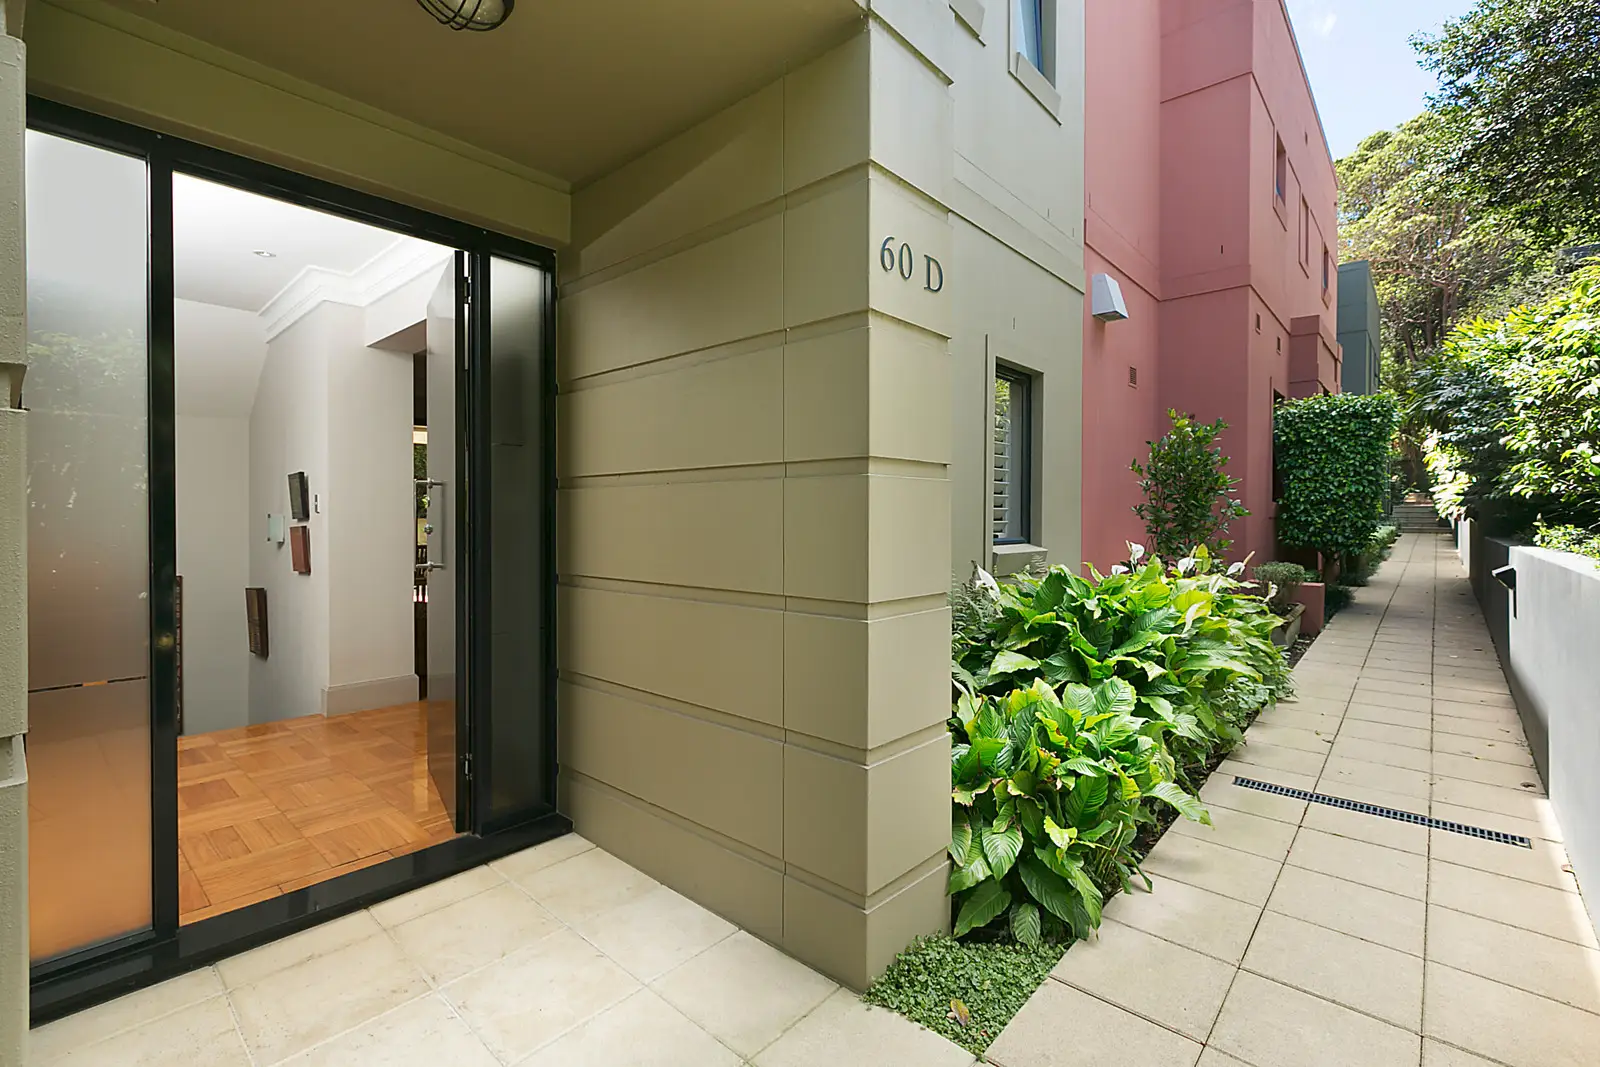 60D Ocean Street, Woollahra Sold by Bradfield Badgerfox - image 1